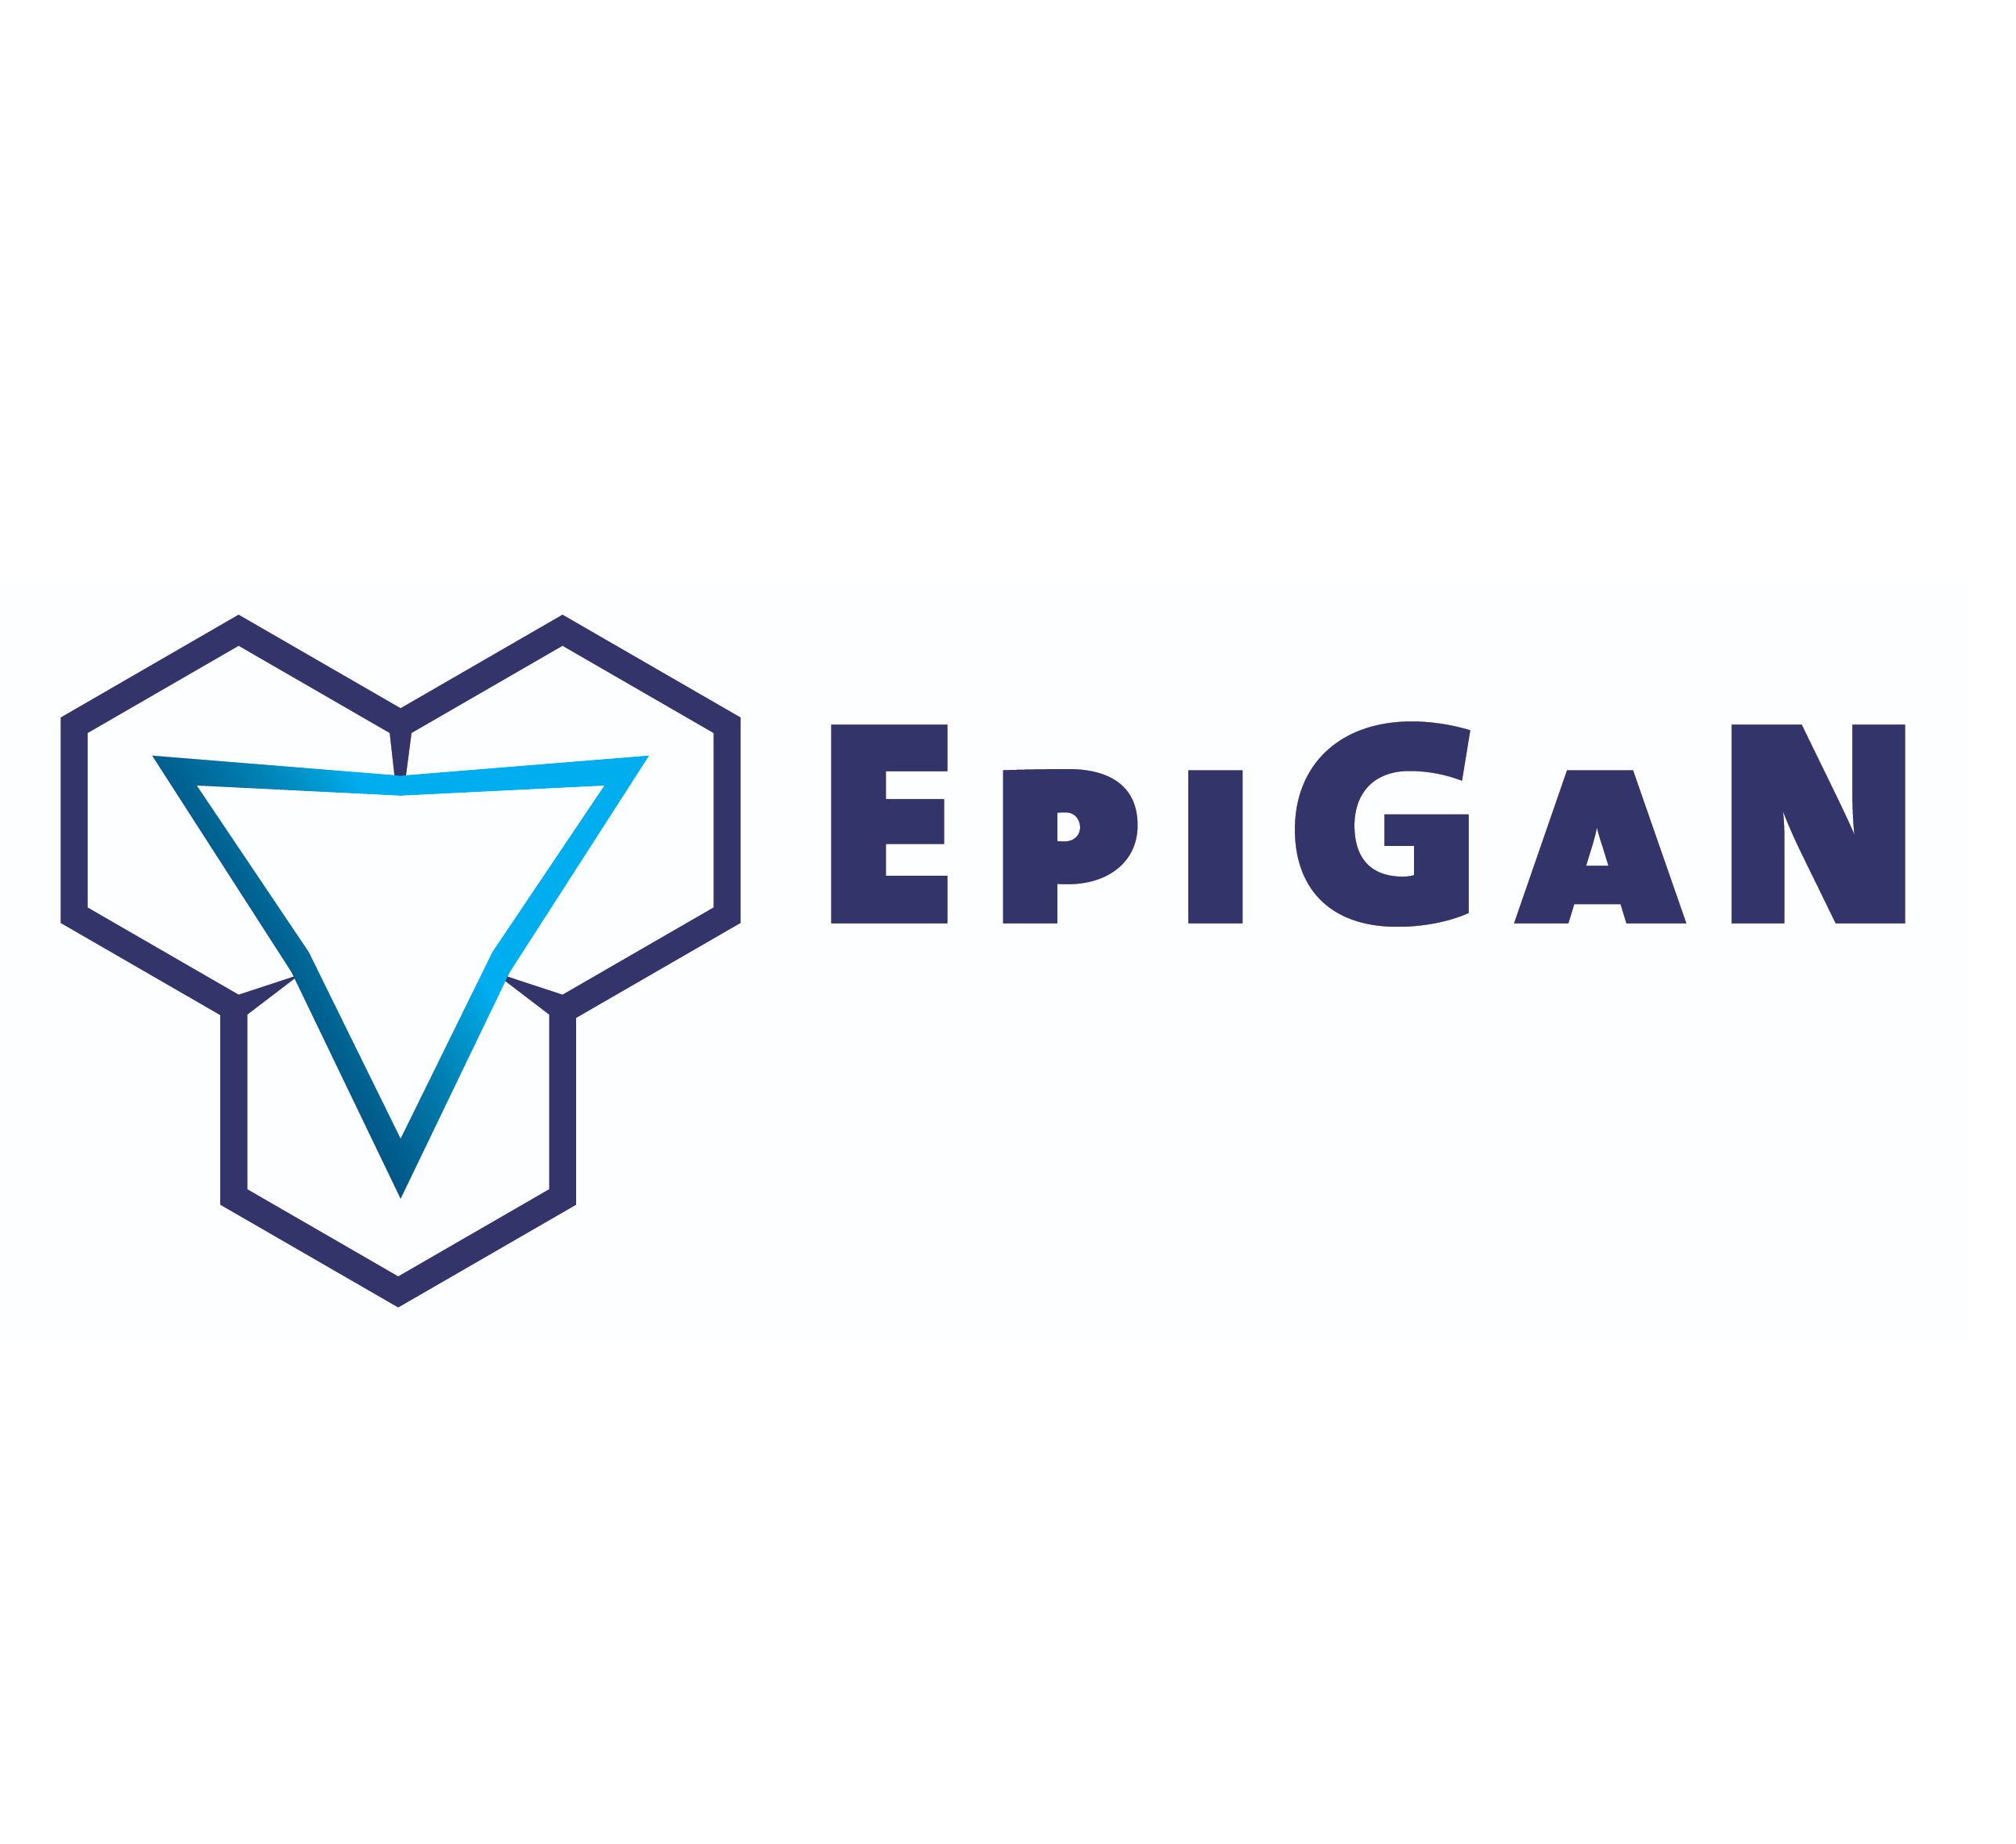 Компания M-projects начала сотрудничество в производителем пластин на основе нитрида галлия - EpiGaN